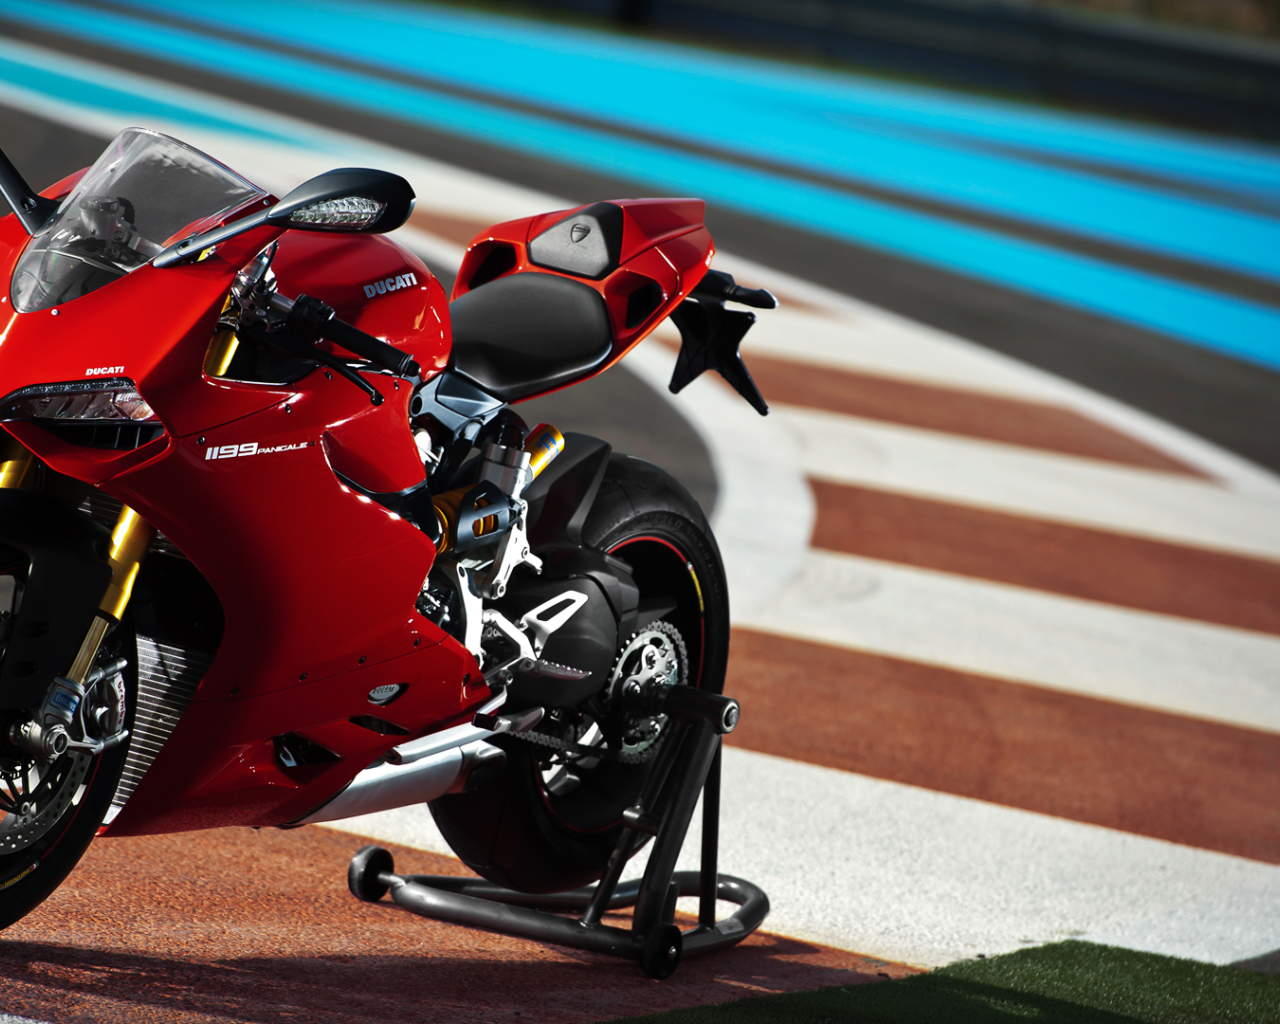 Красный мотоцикл Ducati 1199 Panigale 